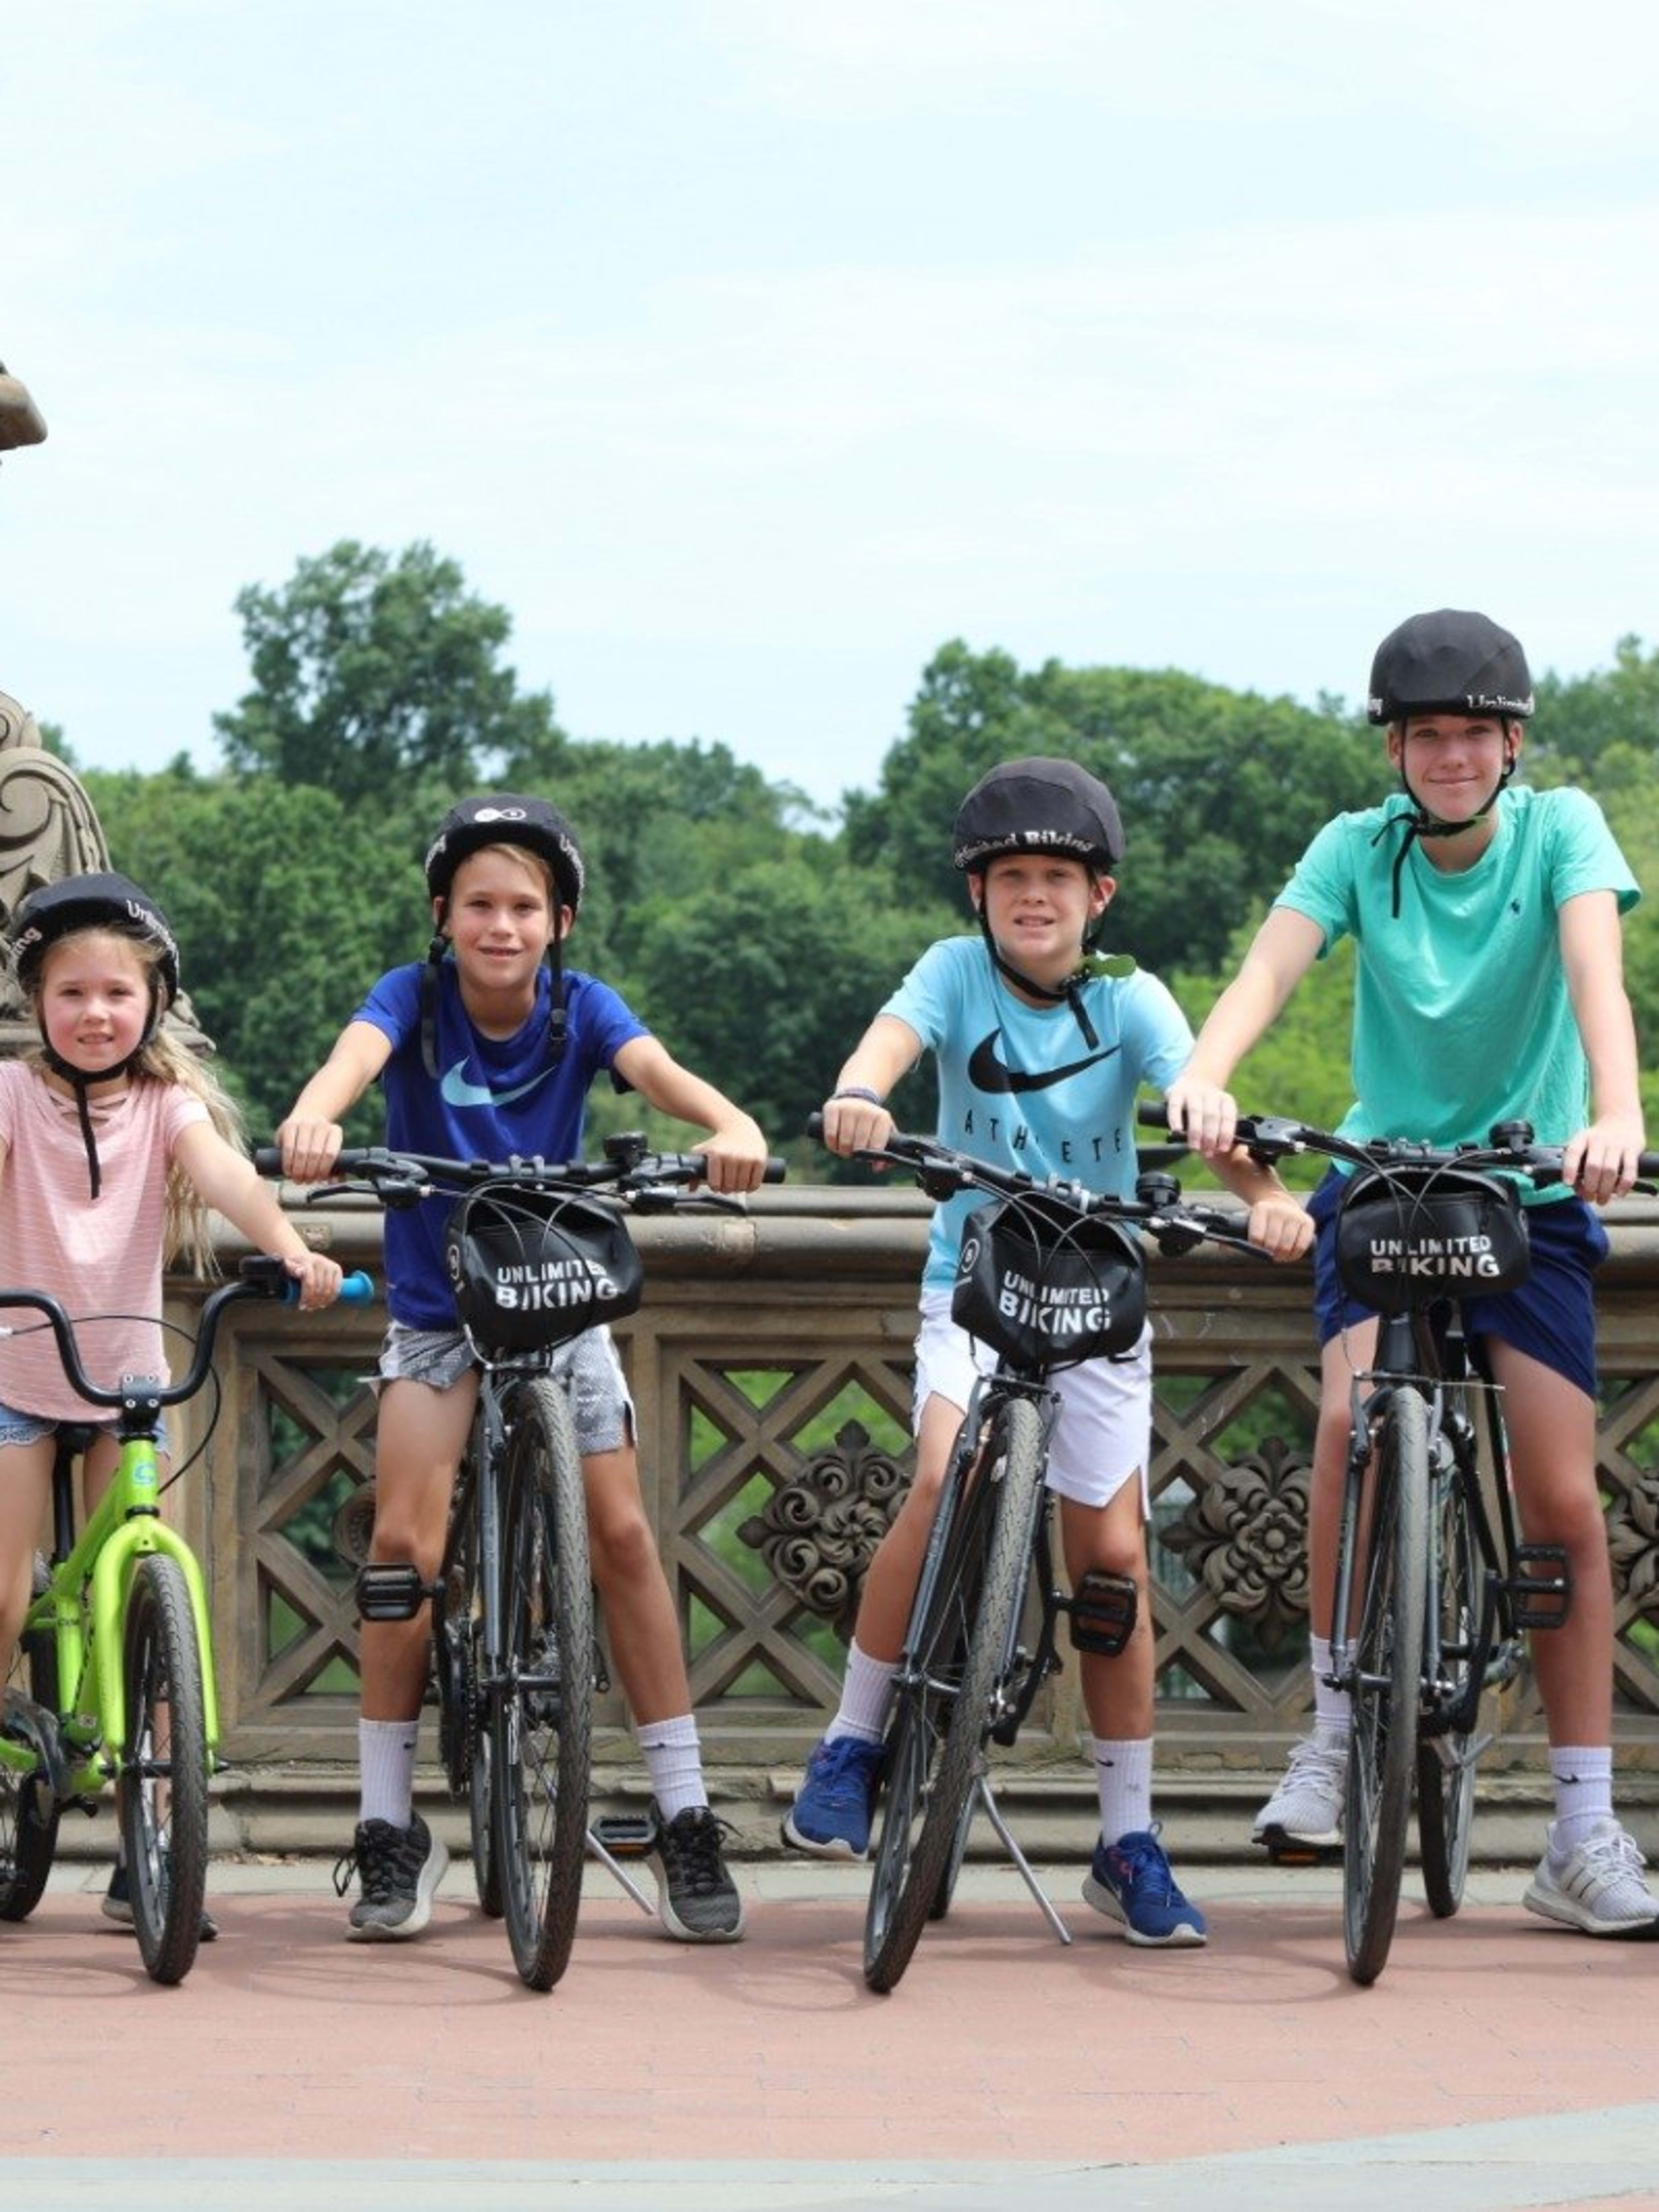 Central park bikes